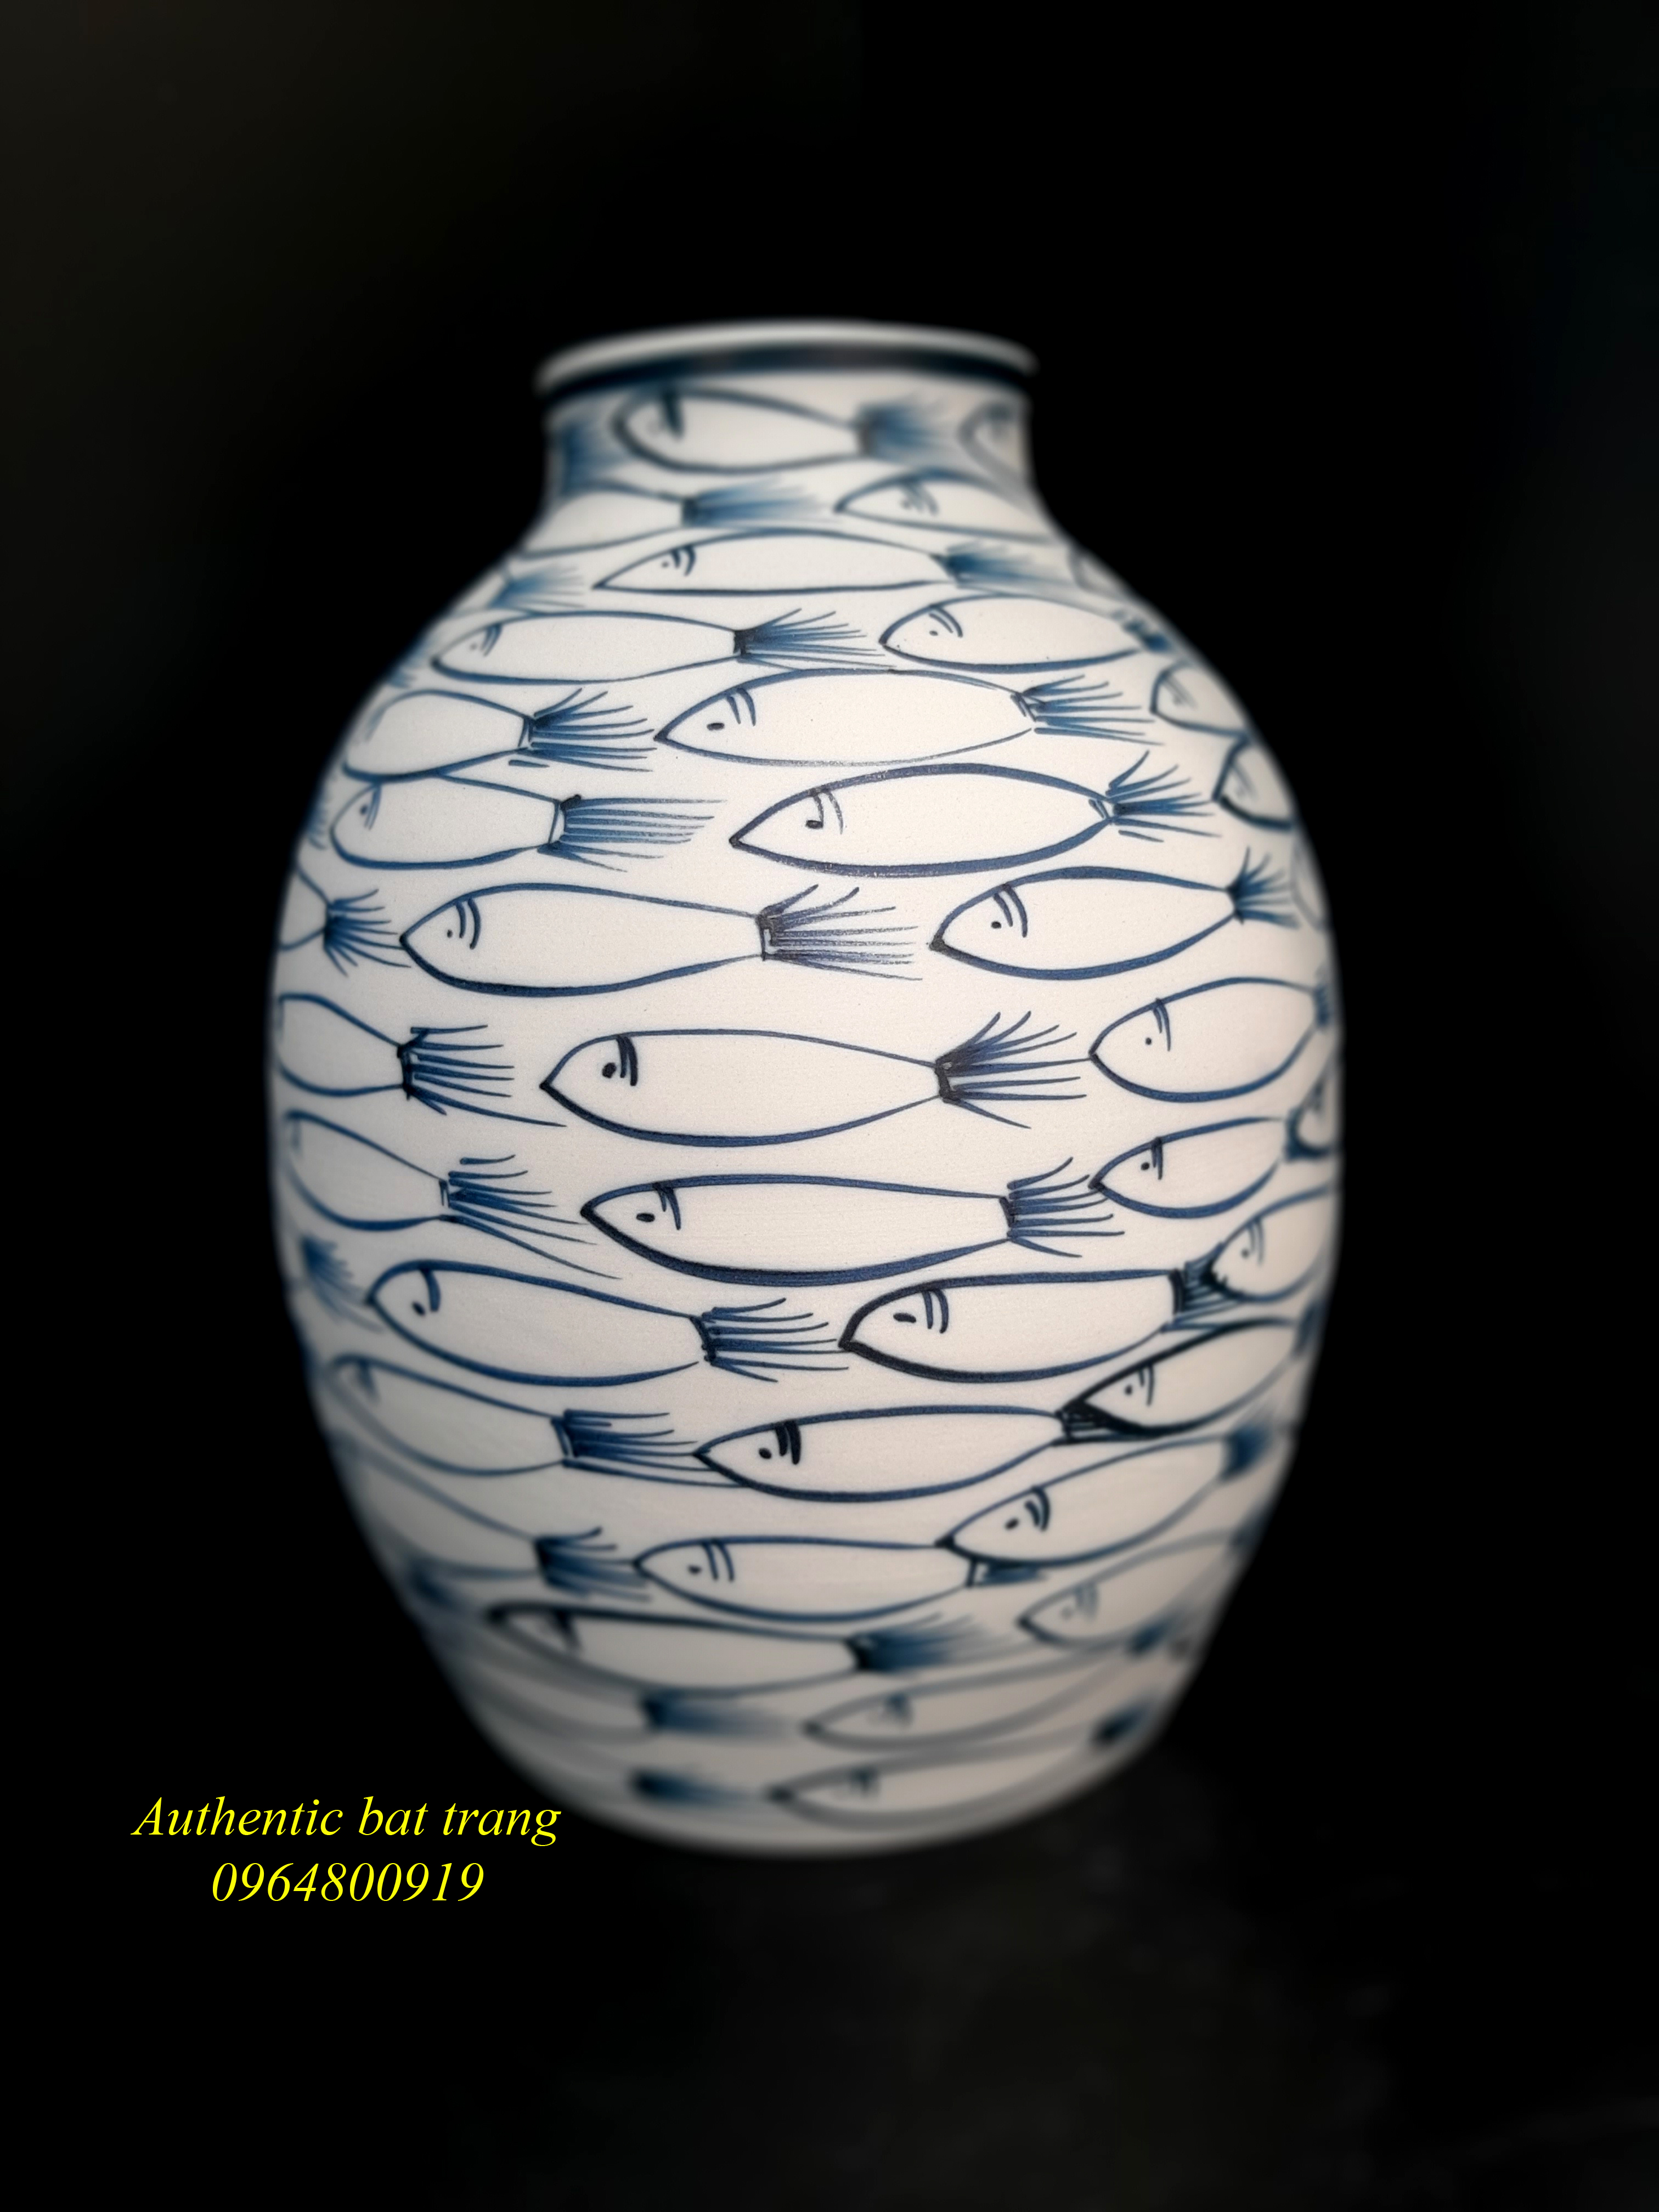 The fishes design vases - Bình vẽ cá cắm hoa đẹp và độc đáo